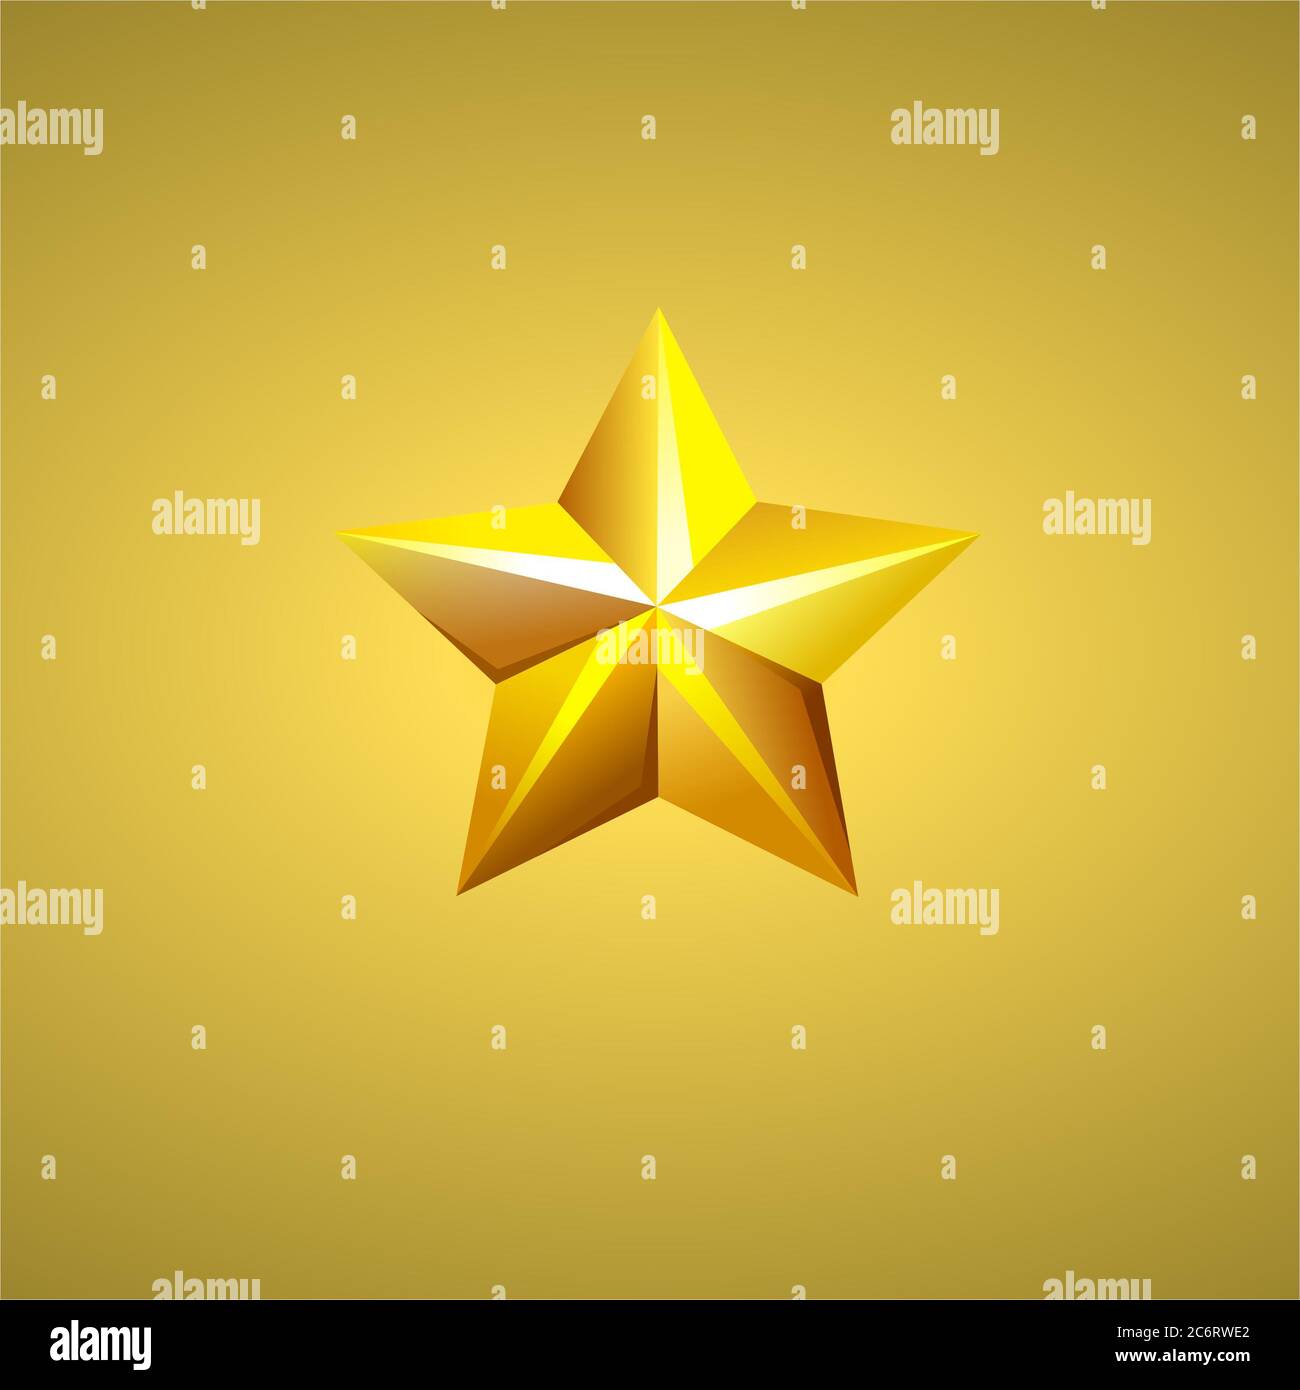 Illustrazione vettoriale delle stelle dorate che si illuminano su uno sfondo dorato. Foto Stock